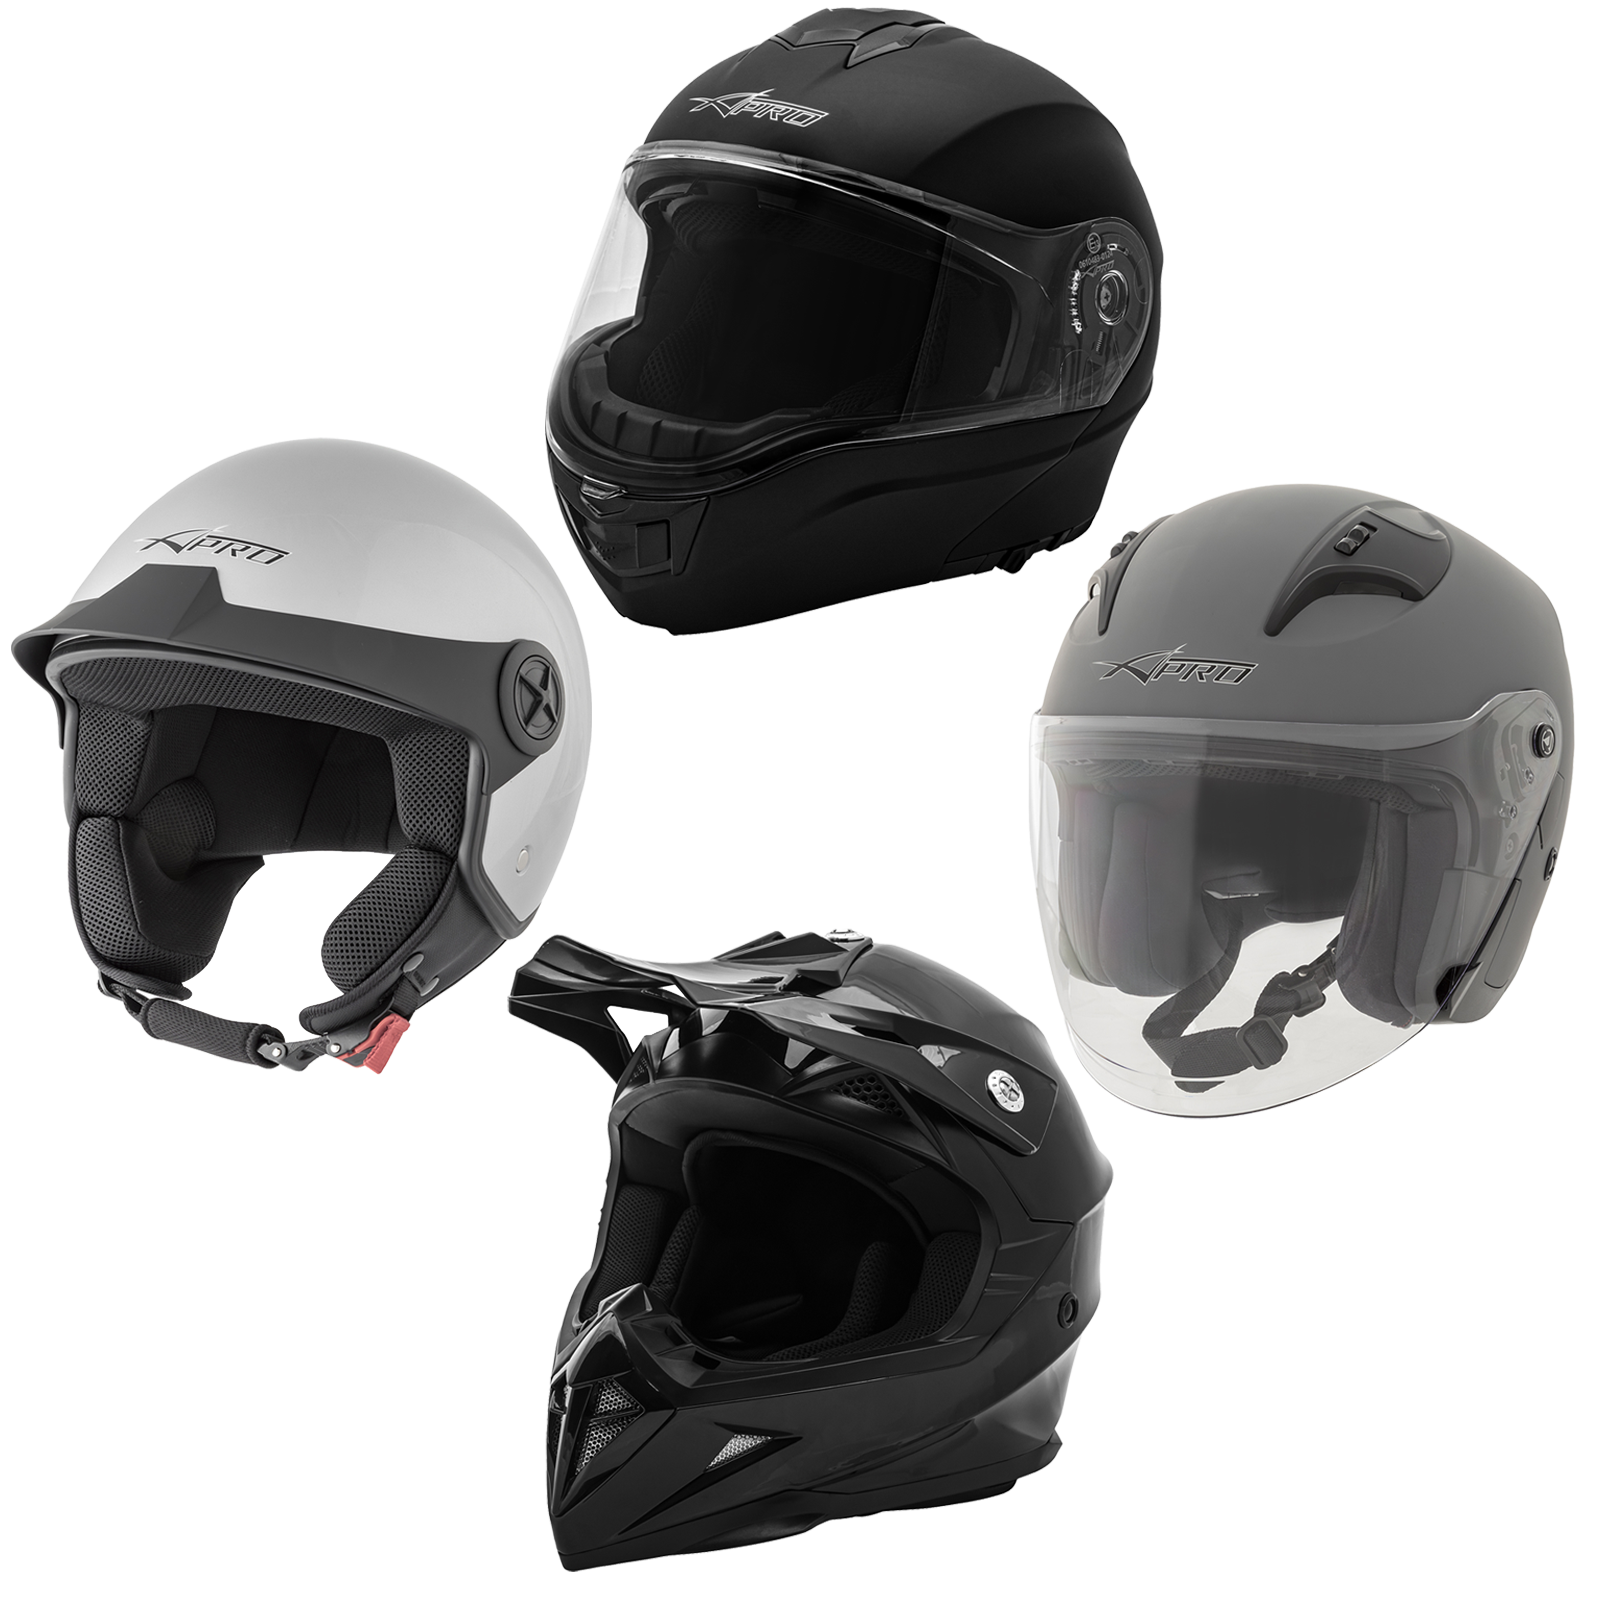 Abbigliamento Moto e Accessori - Maschera Occhiali Casco Moto Cross Offroad  Enduro Motard Sci Snowboard Arancio